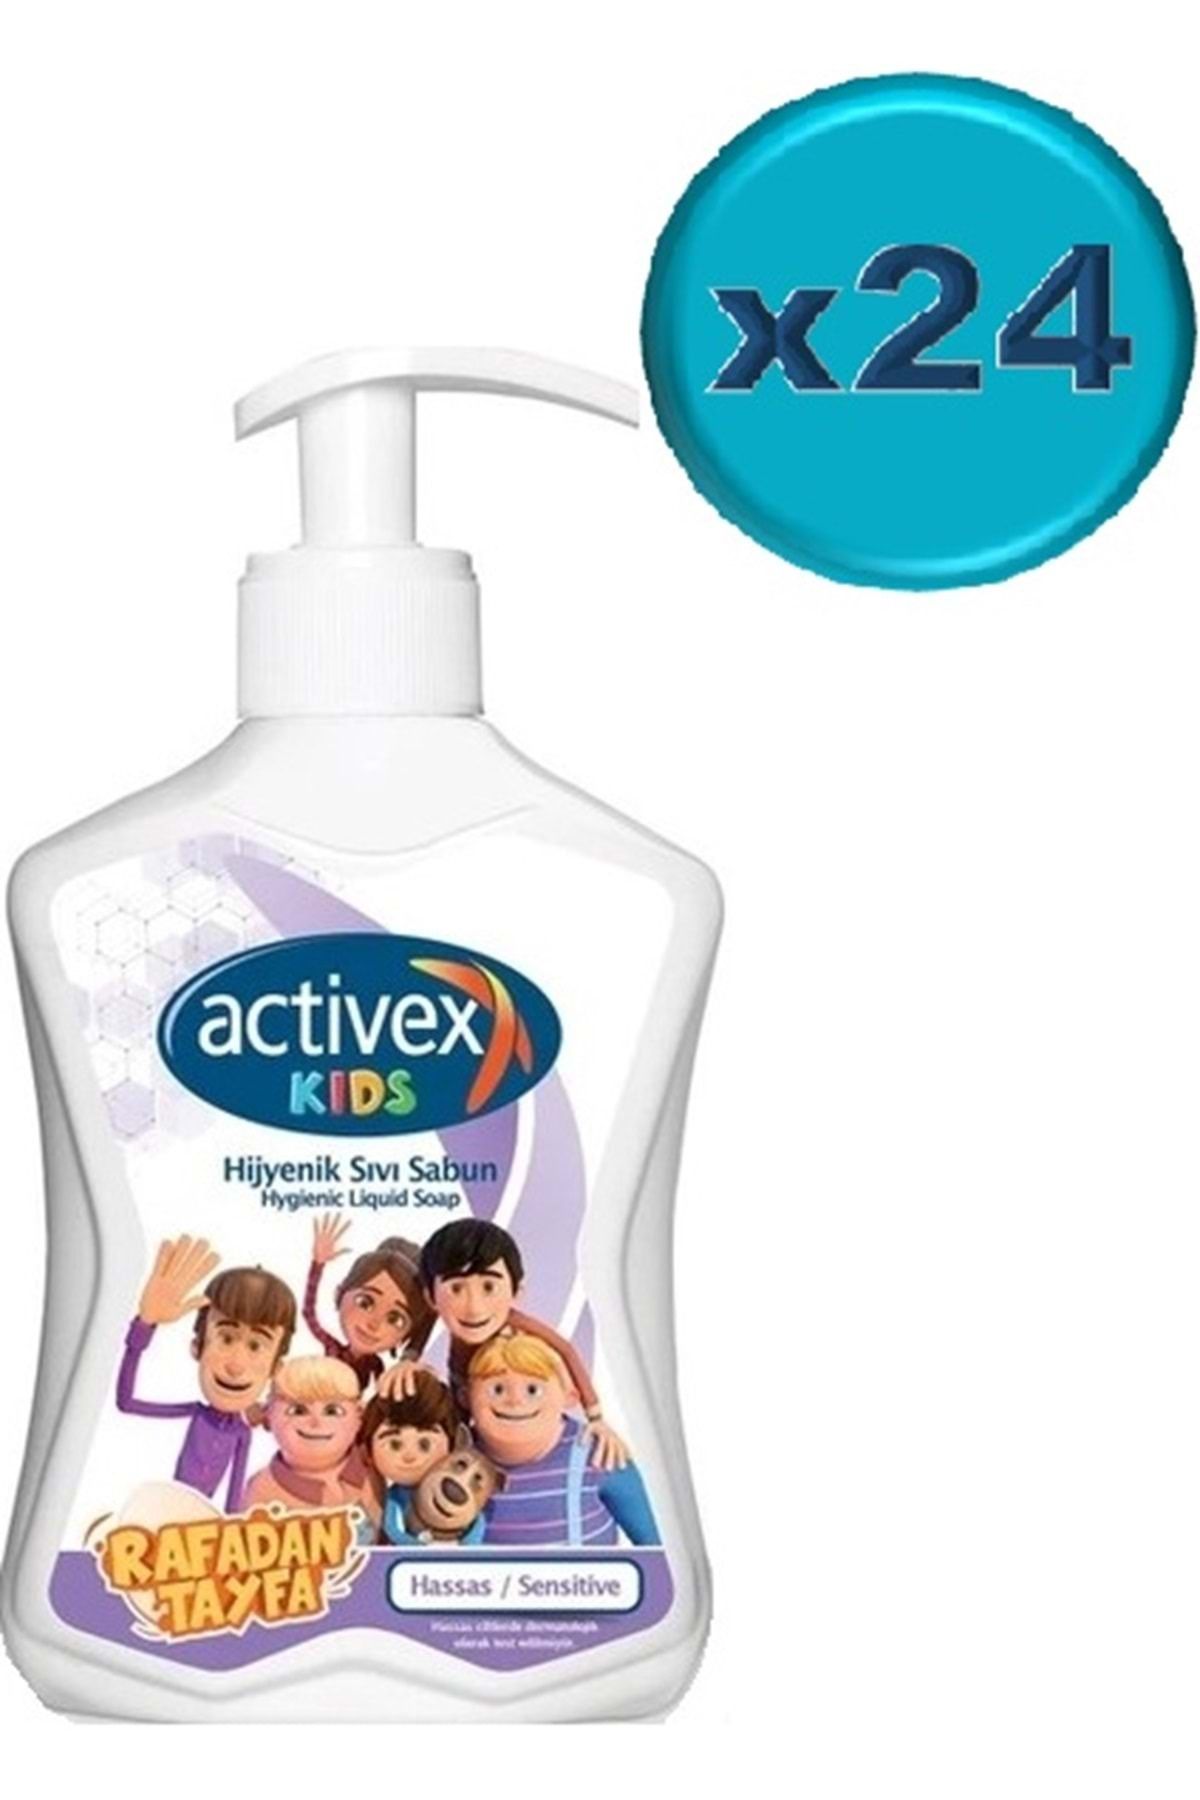 Activex Antibakteriyel Sıvı Sabun Hassas/sensitive 300ml Pompalı (RAFADAN TAYFA SERİSİ) (24 LÜ SET)